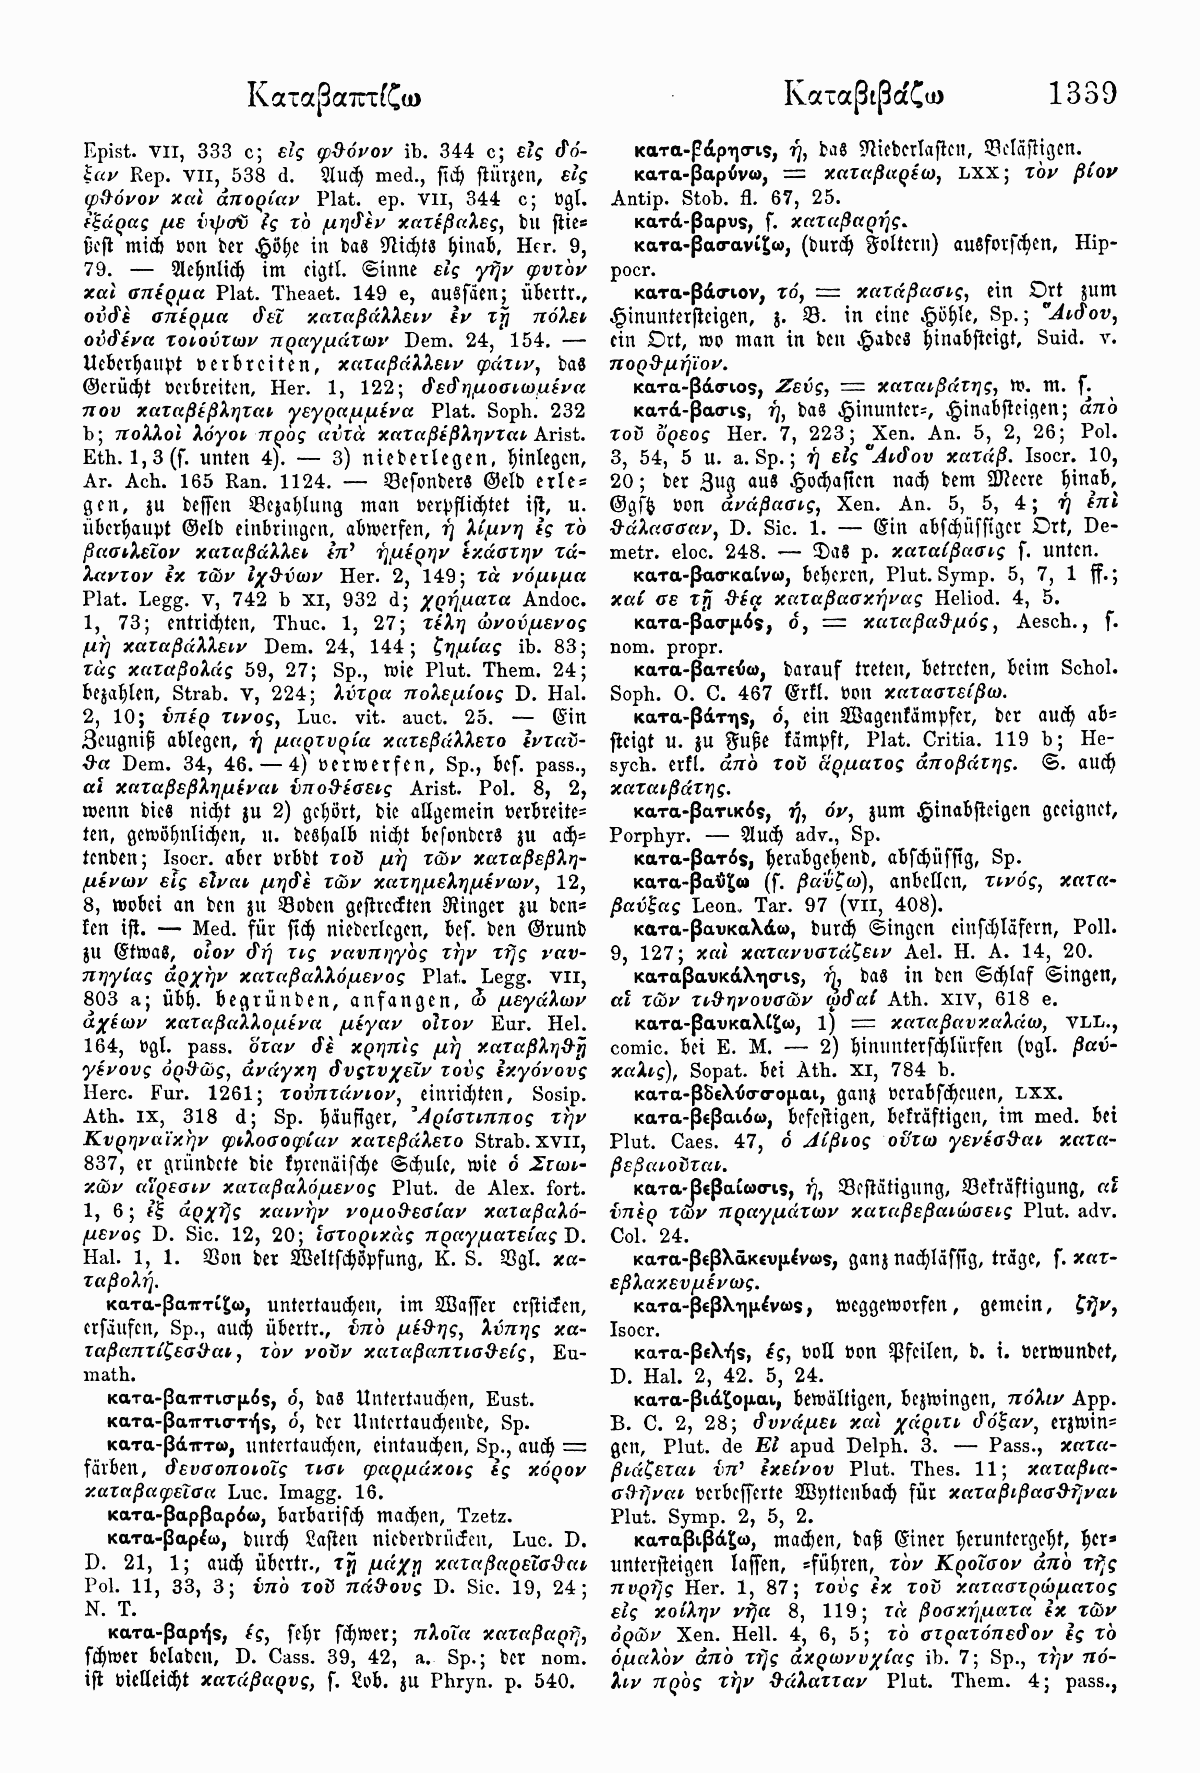 Wilhelm Pape: Handwörterbuch der griechischen Sprache. Braunschweig <sup>3</sup>1914, Band 1 S. 1339